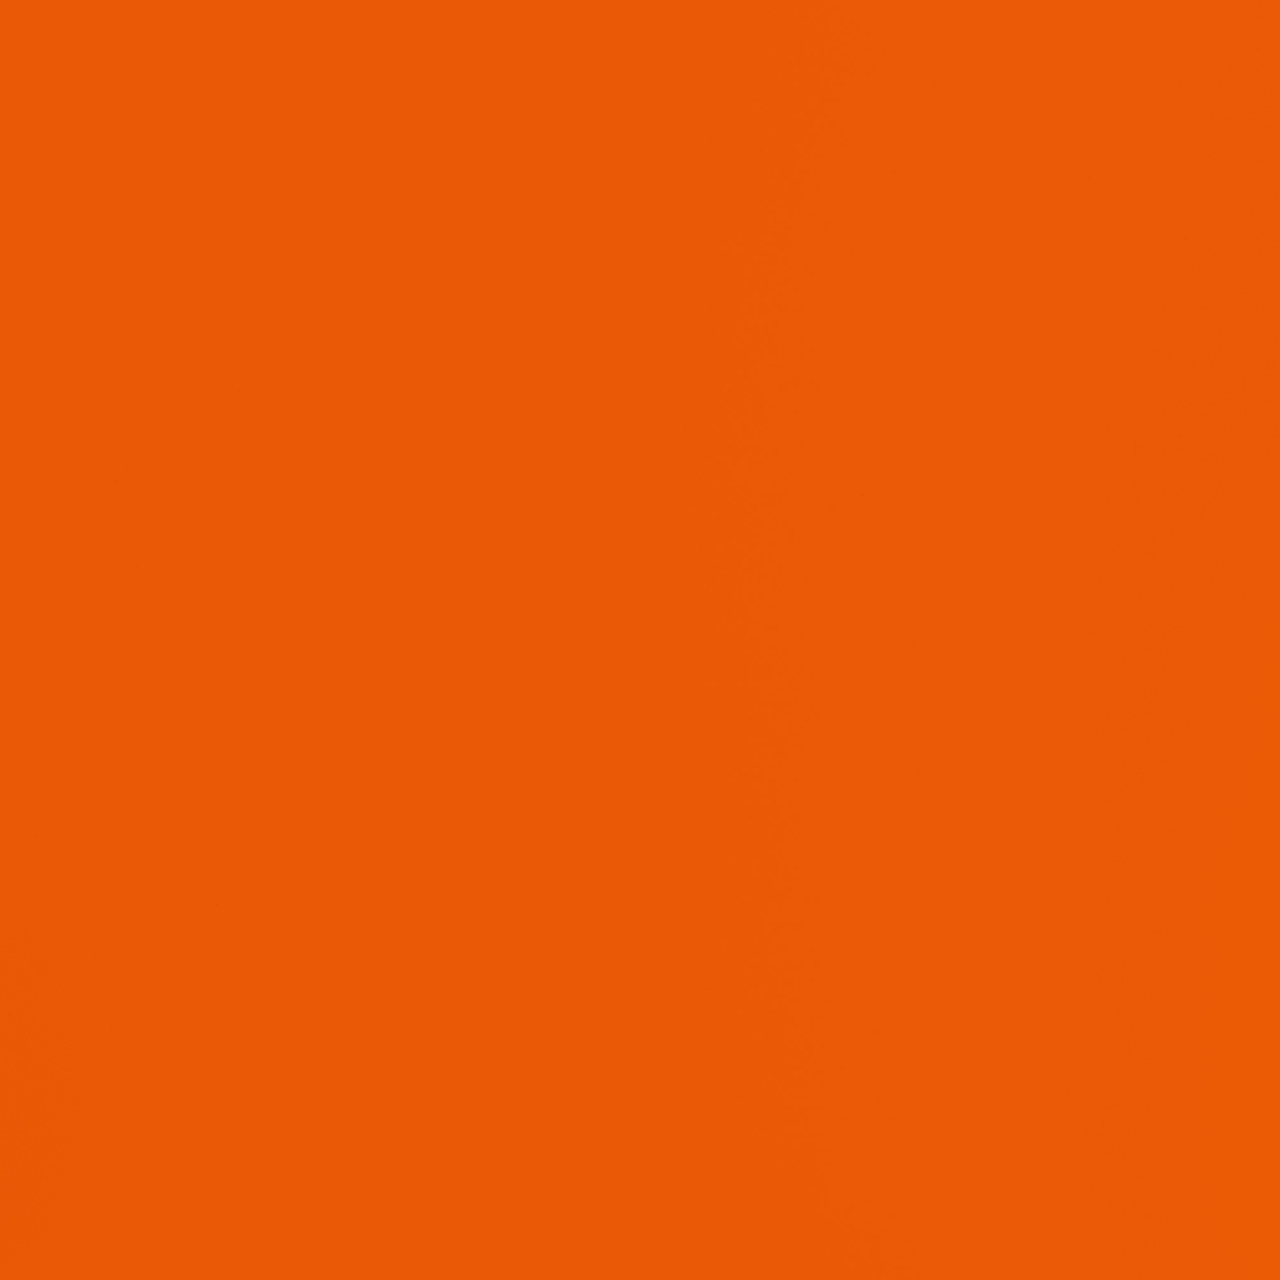 11.18 - Pure orange - Metal essential